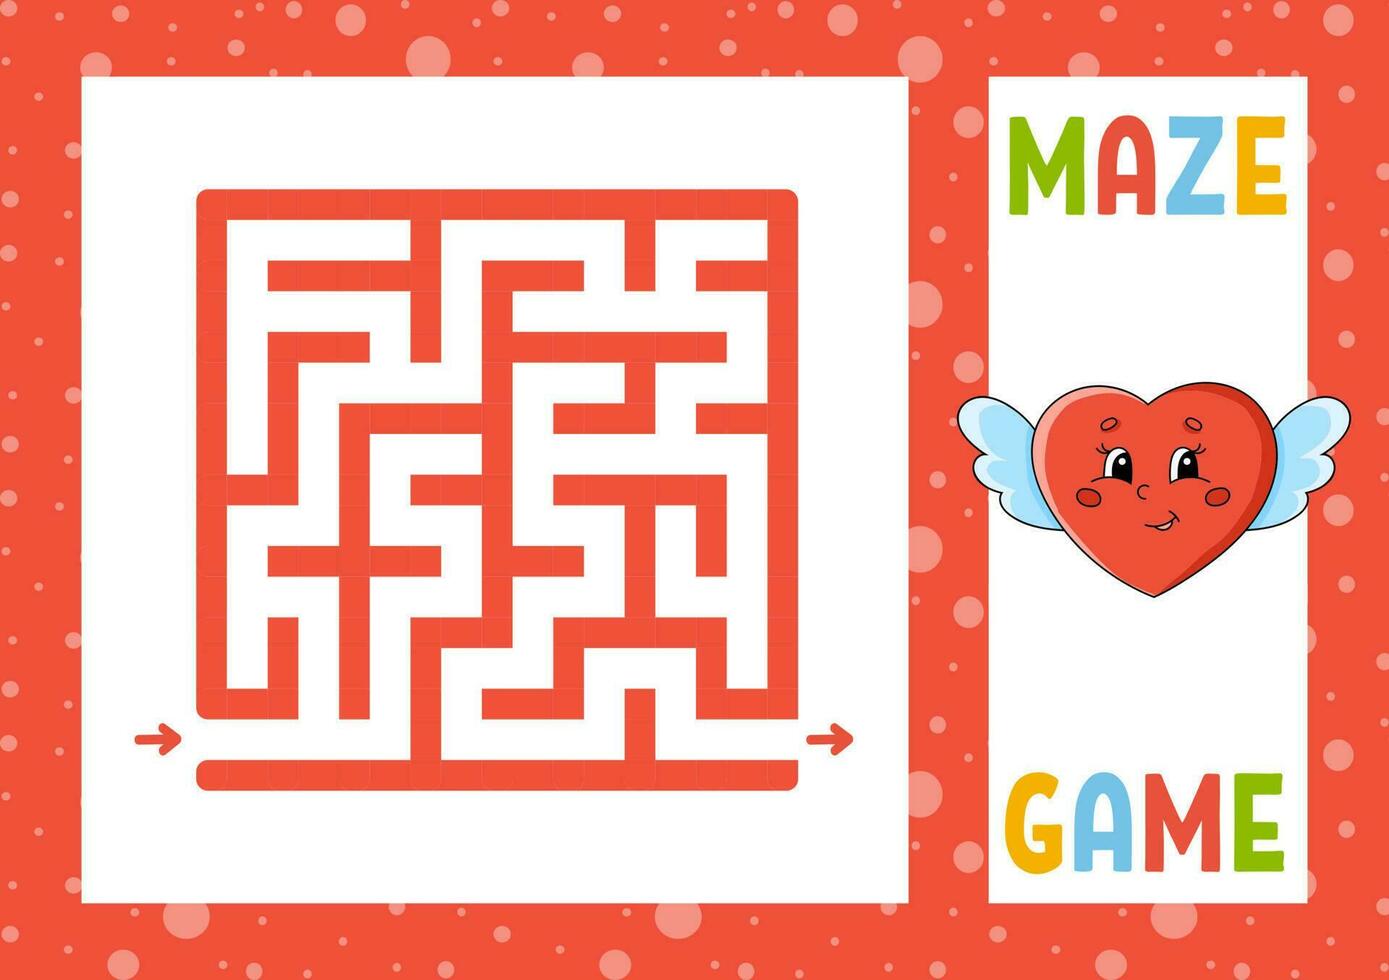 quadratisches Labyrinth. Spiel für Kinder. Puzzle für Kinder. glücklicher Charakter. Labyrinth Rätsel. Farbe-Vektor-Illustration. den richtigen Weg finden. isolierte Vektor-Illustration. Cartoon-Stil. vektor